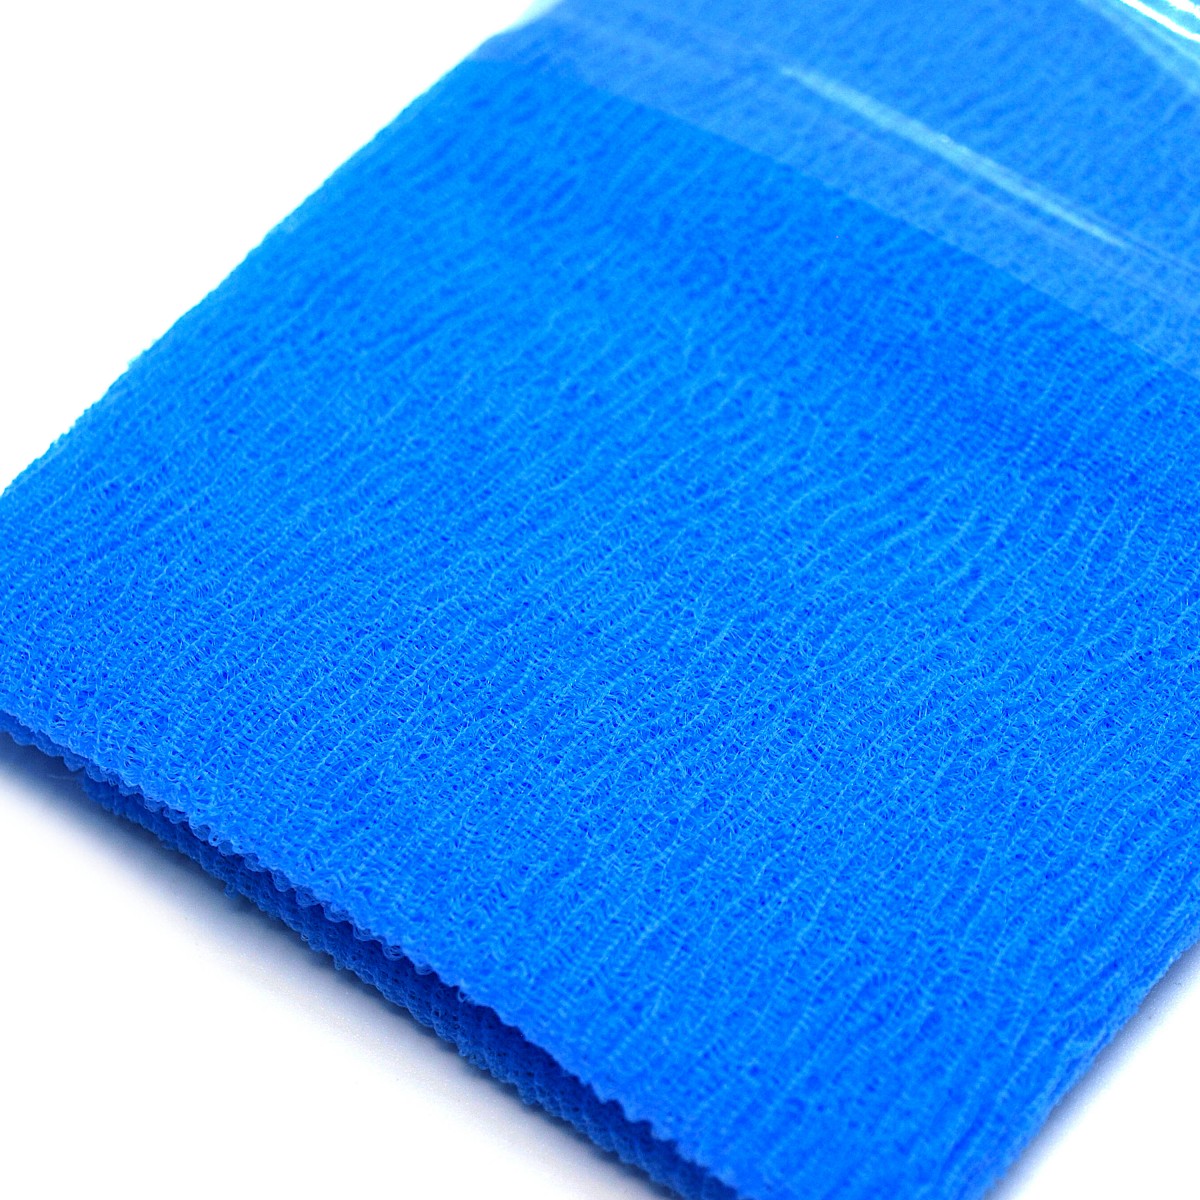 Мочалка OHE Cure Nylon Towel Hard 28х110